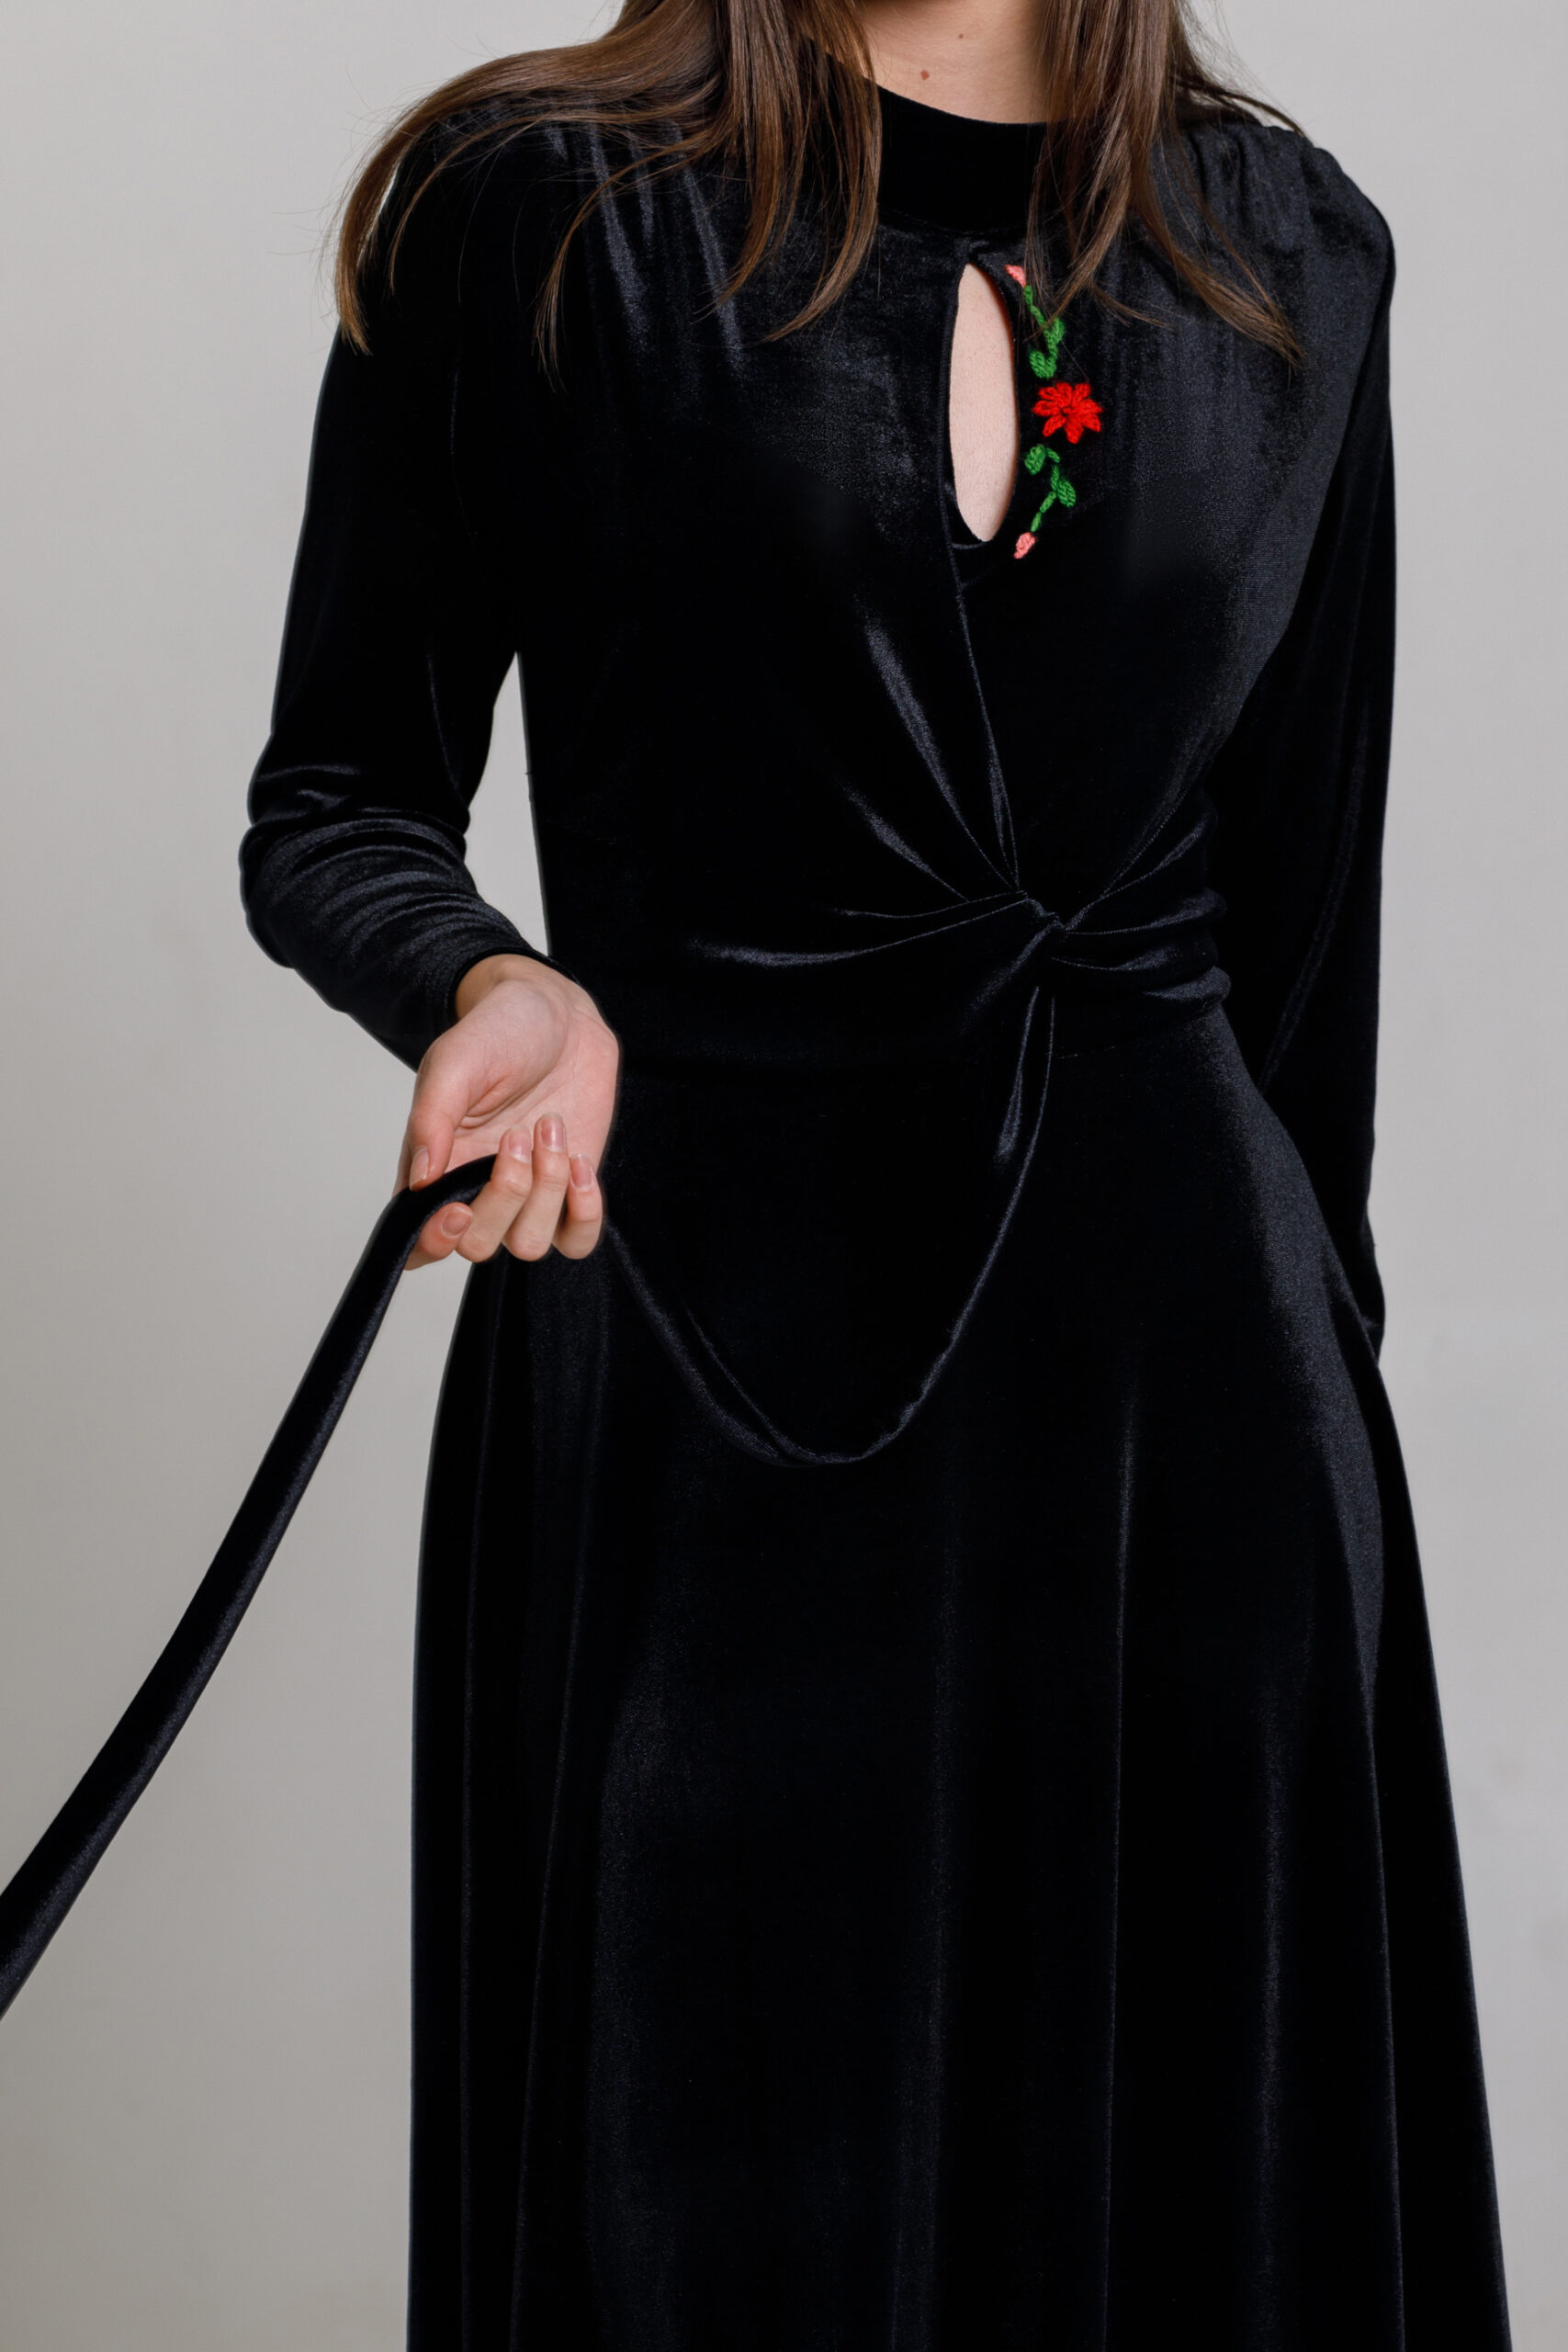 Rochie RYLEI elegantă din catifea neagră. Materiale naturale, design unicat, cu broderie si aplicatii handmade